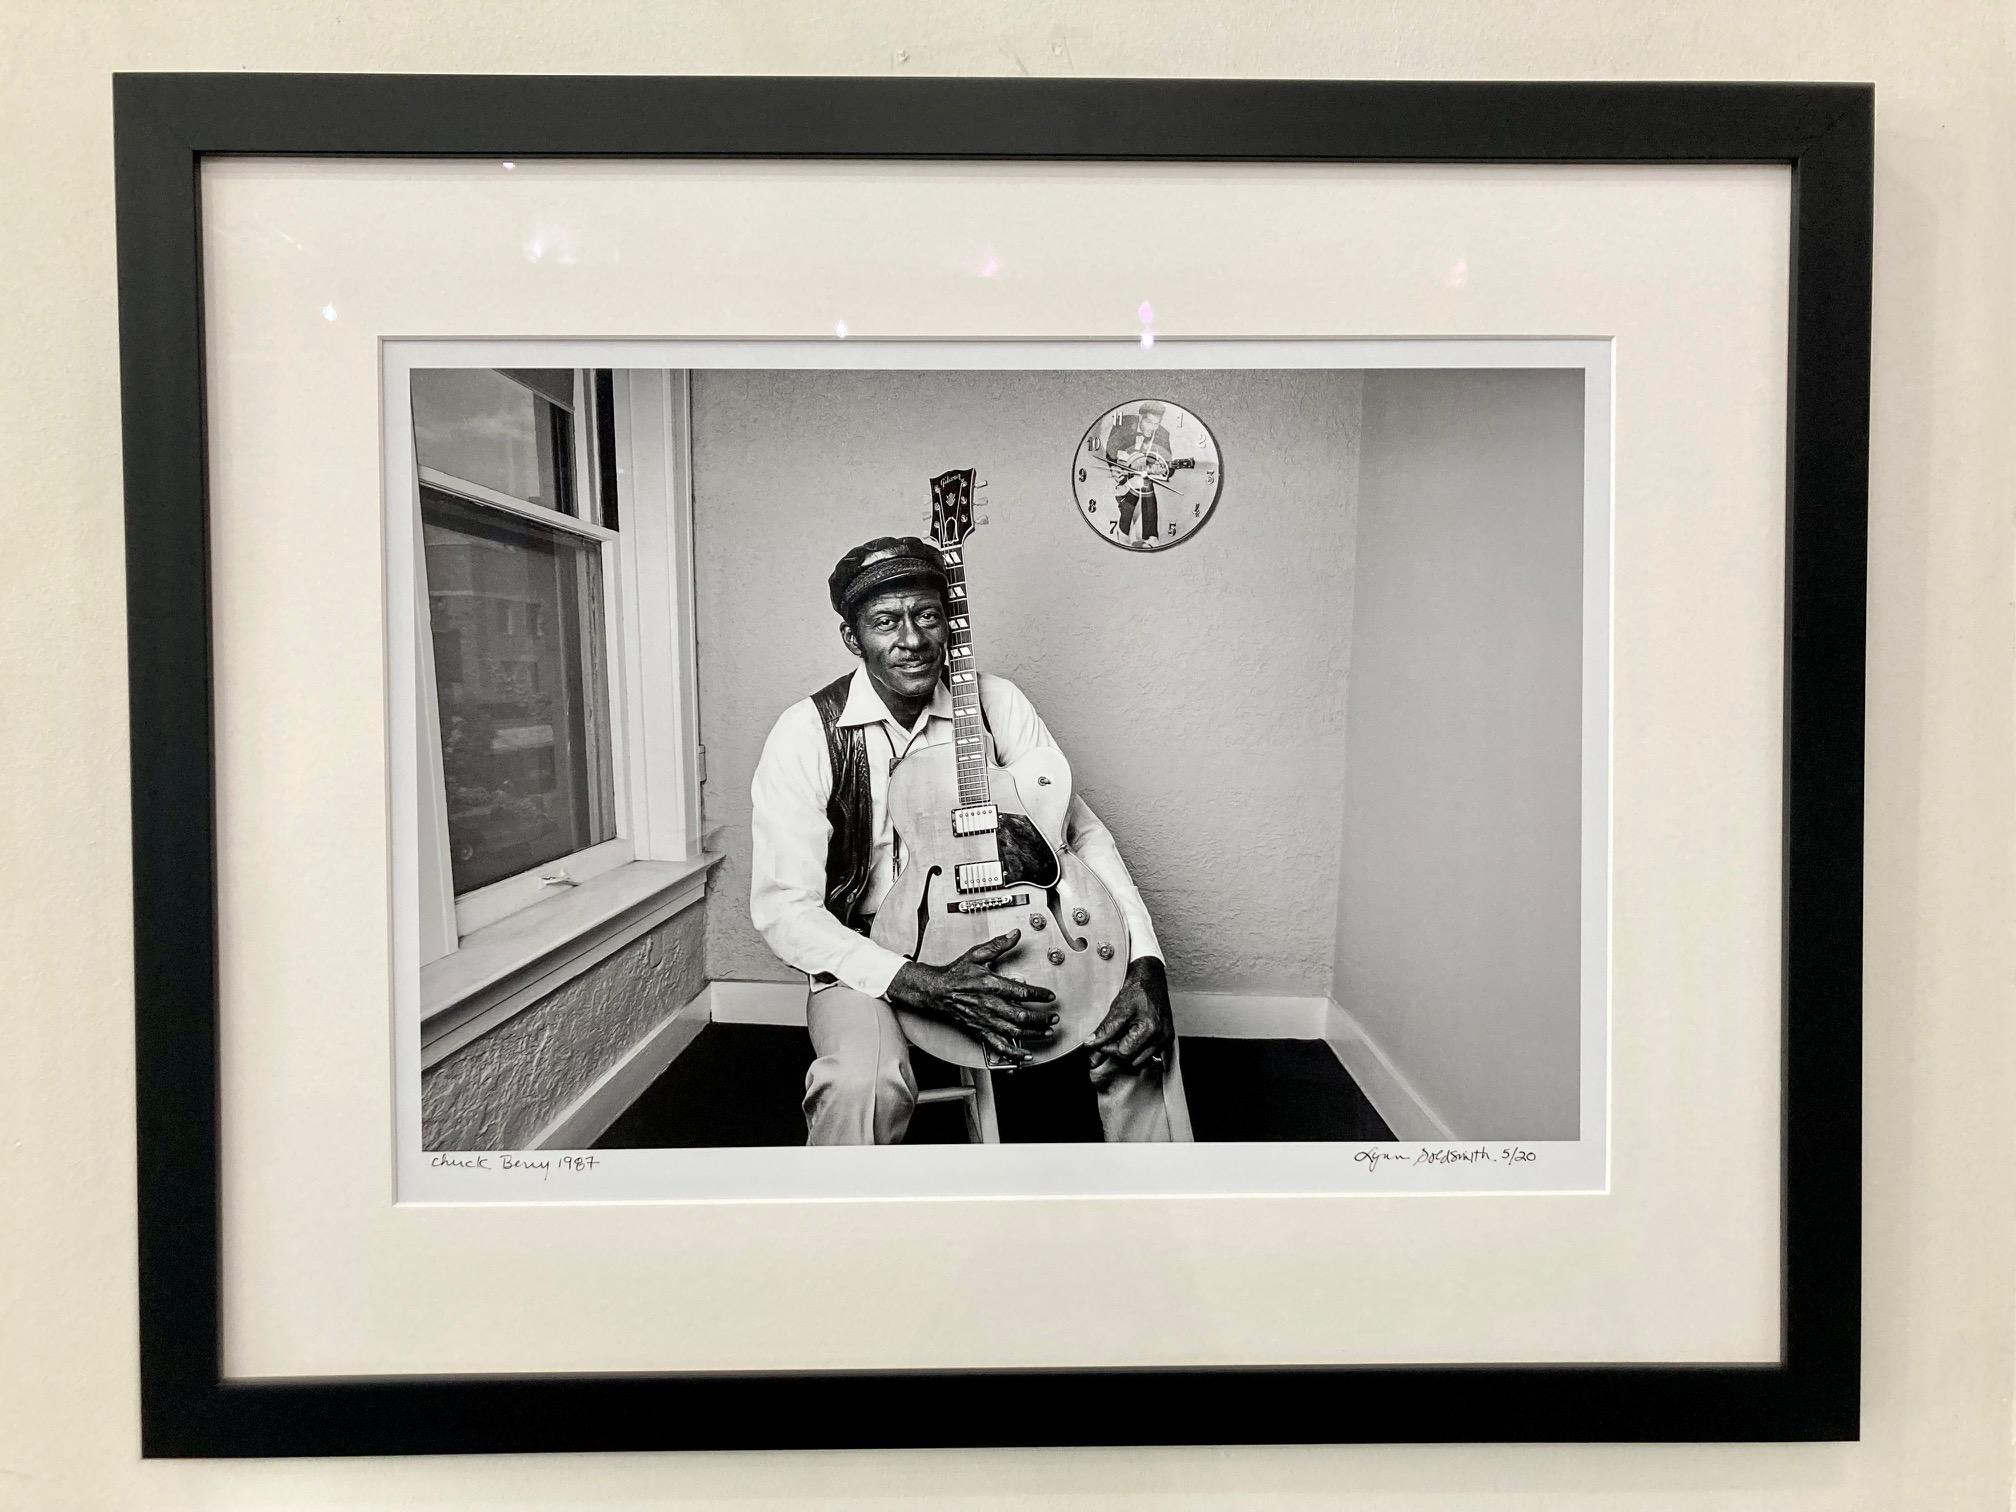 Chuck Berry von Lynn Goldsmith Gerahmter gerahmter signierter Druck in limitierter Auflage